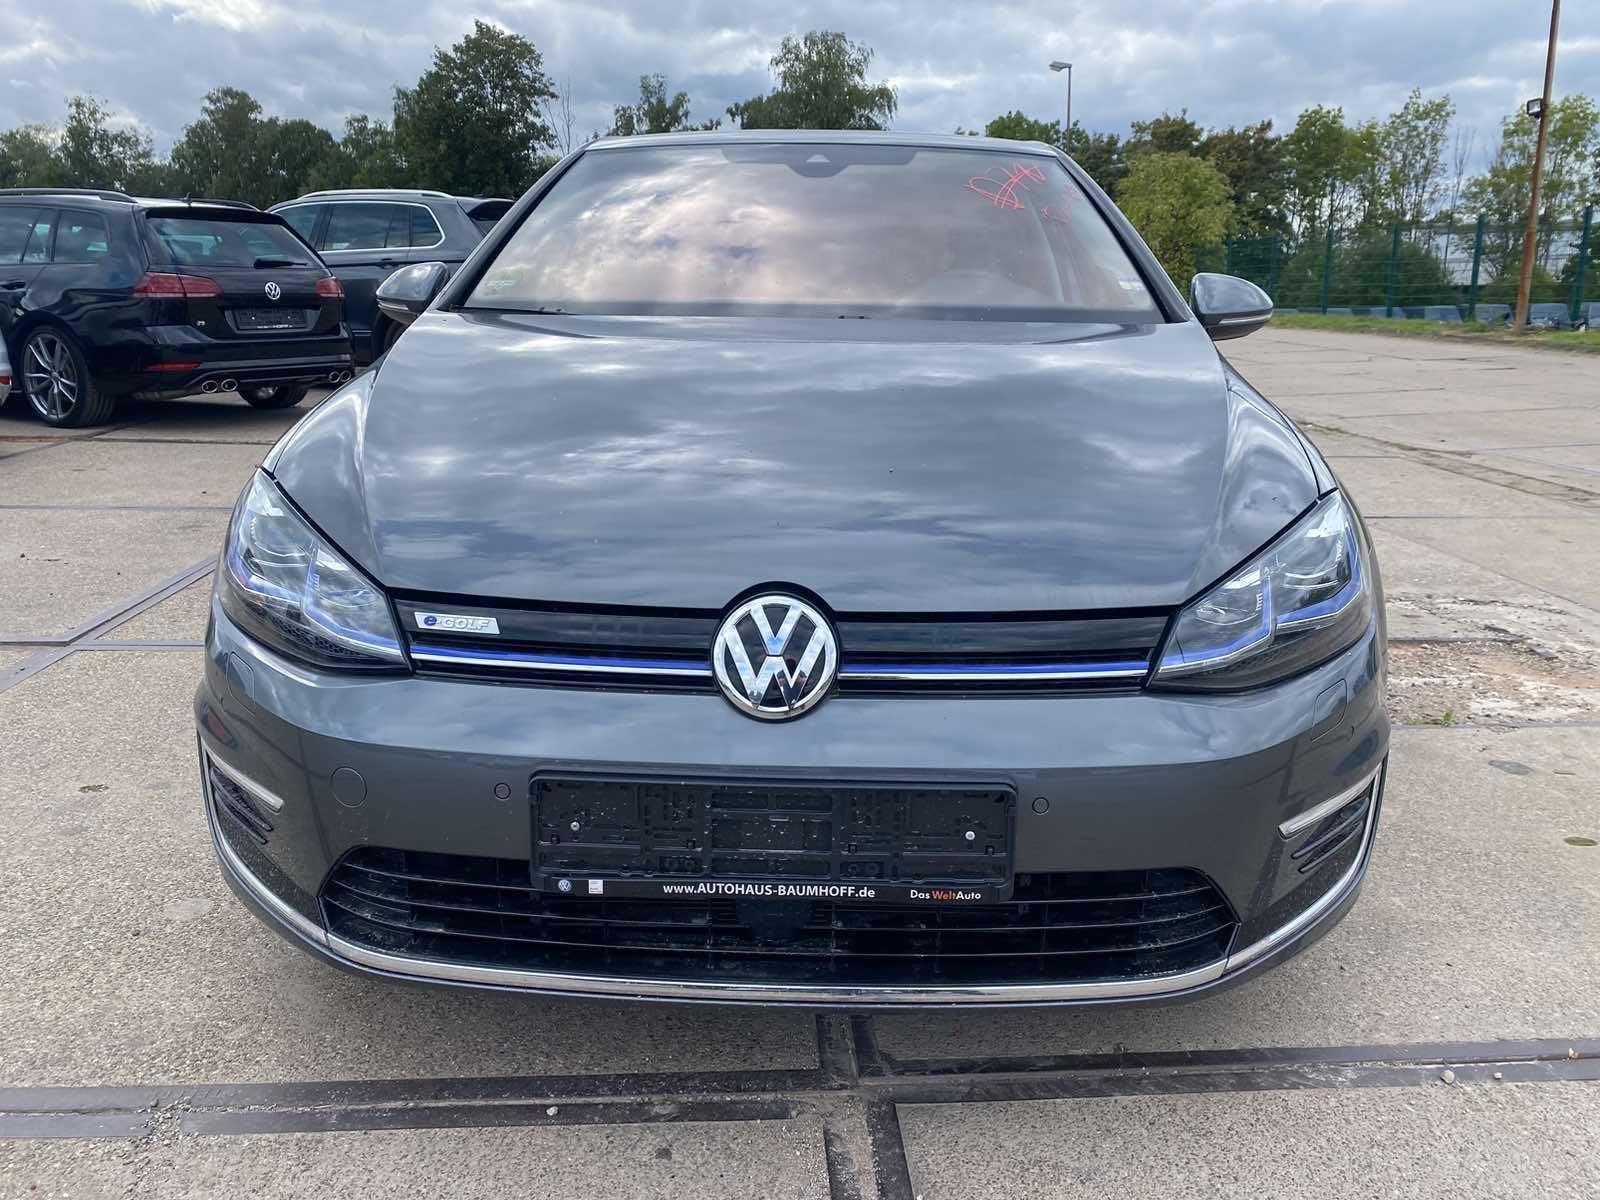 Volkswagen e-Golf 2020 р.в. 35.8 kWh (136 к.с.) • Highline